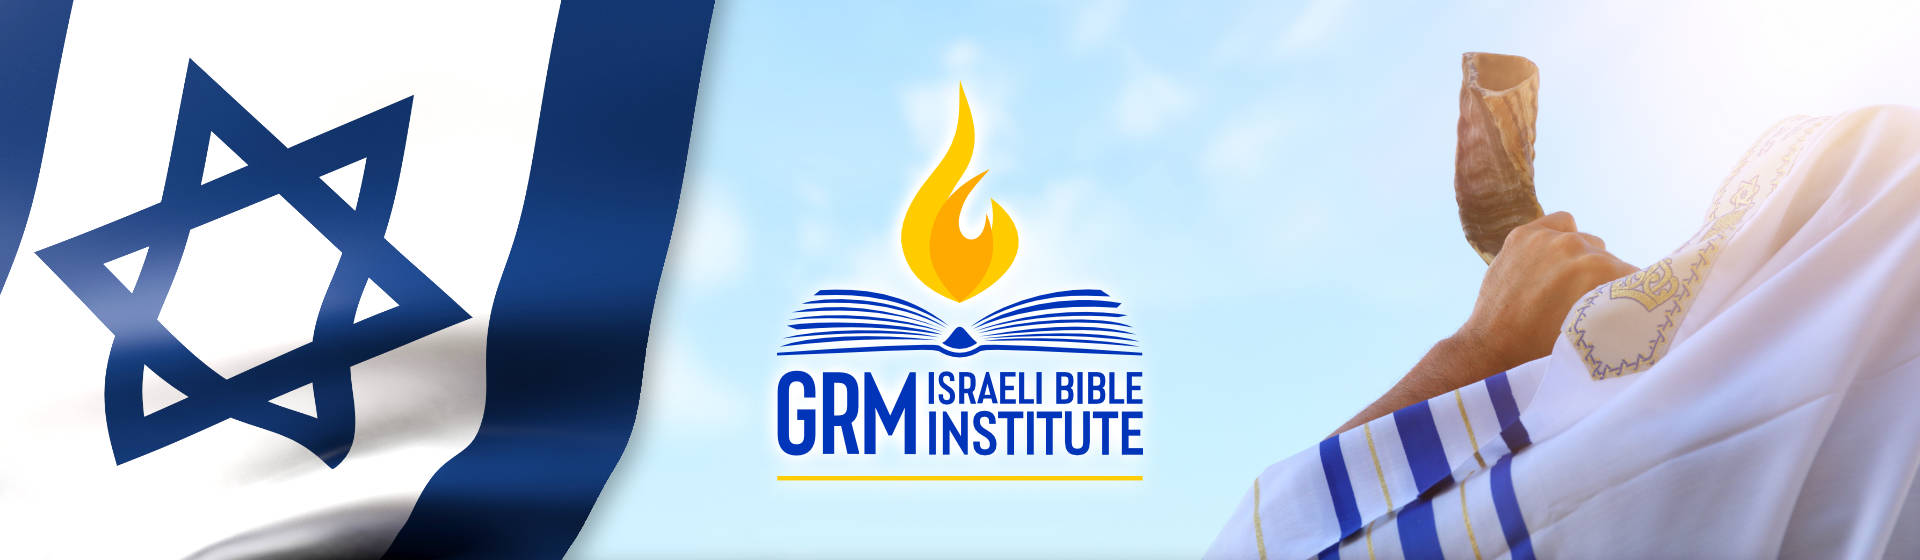 GRM Bible Institute